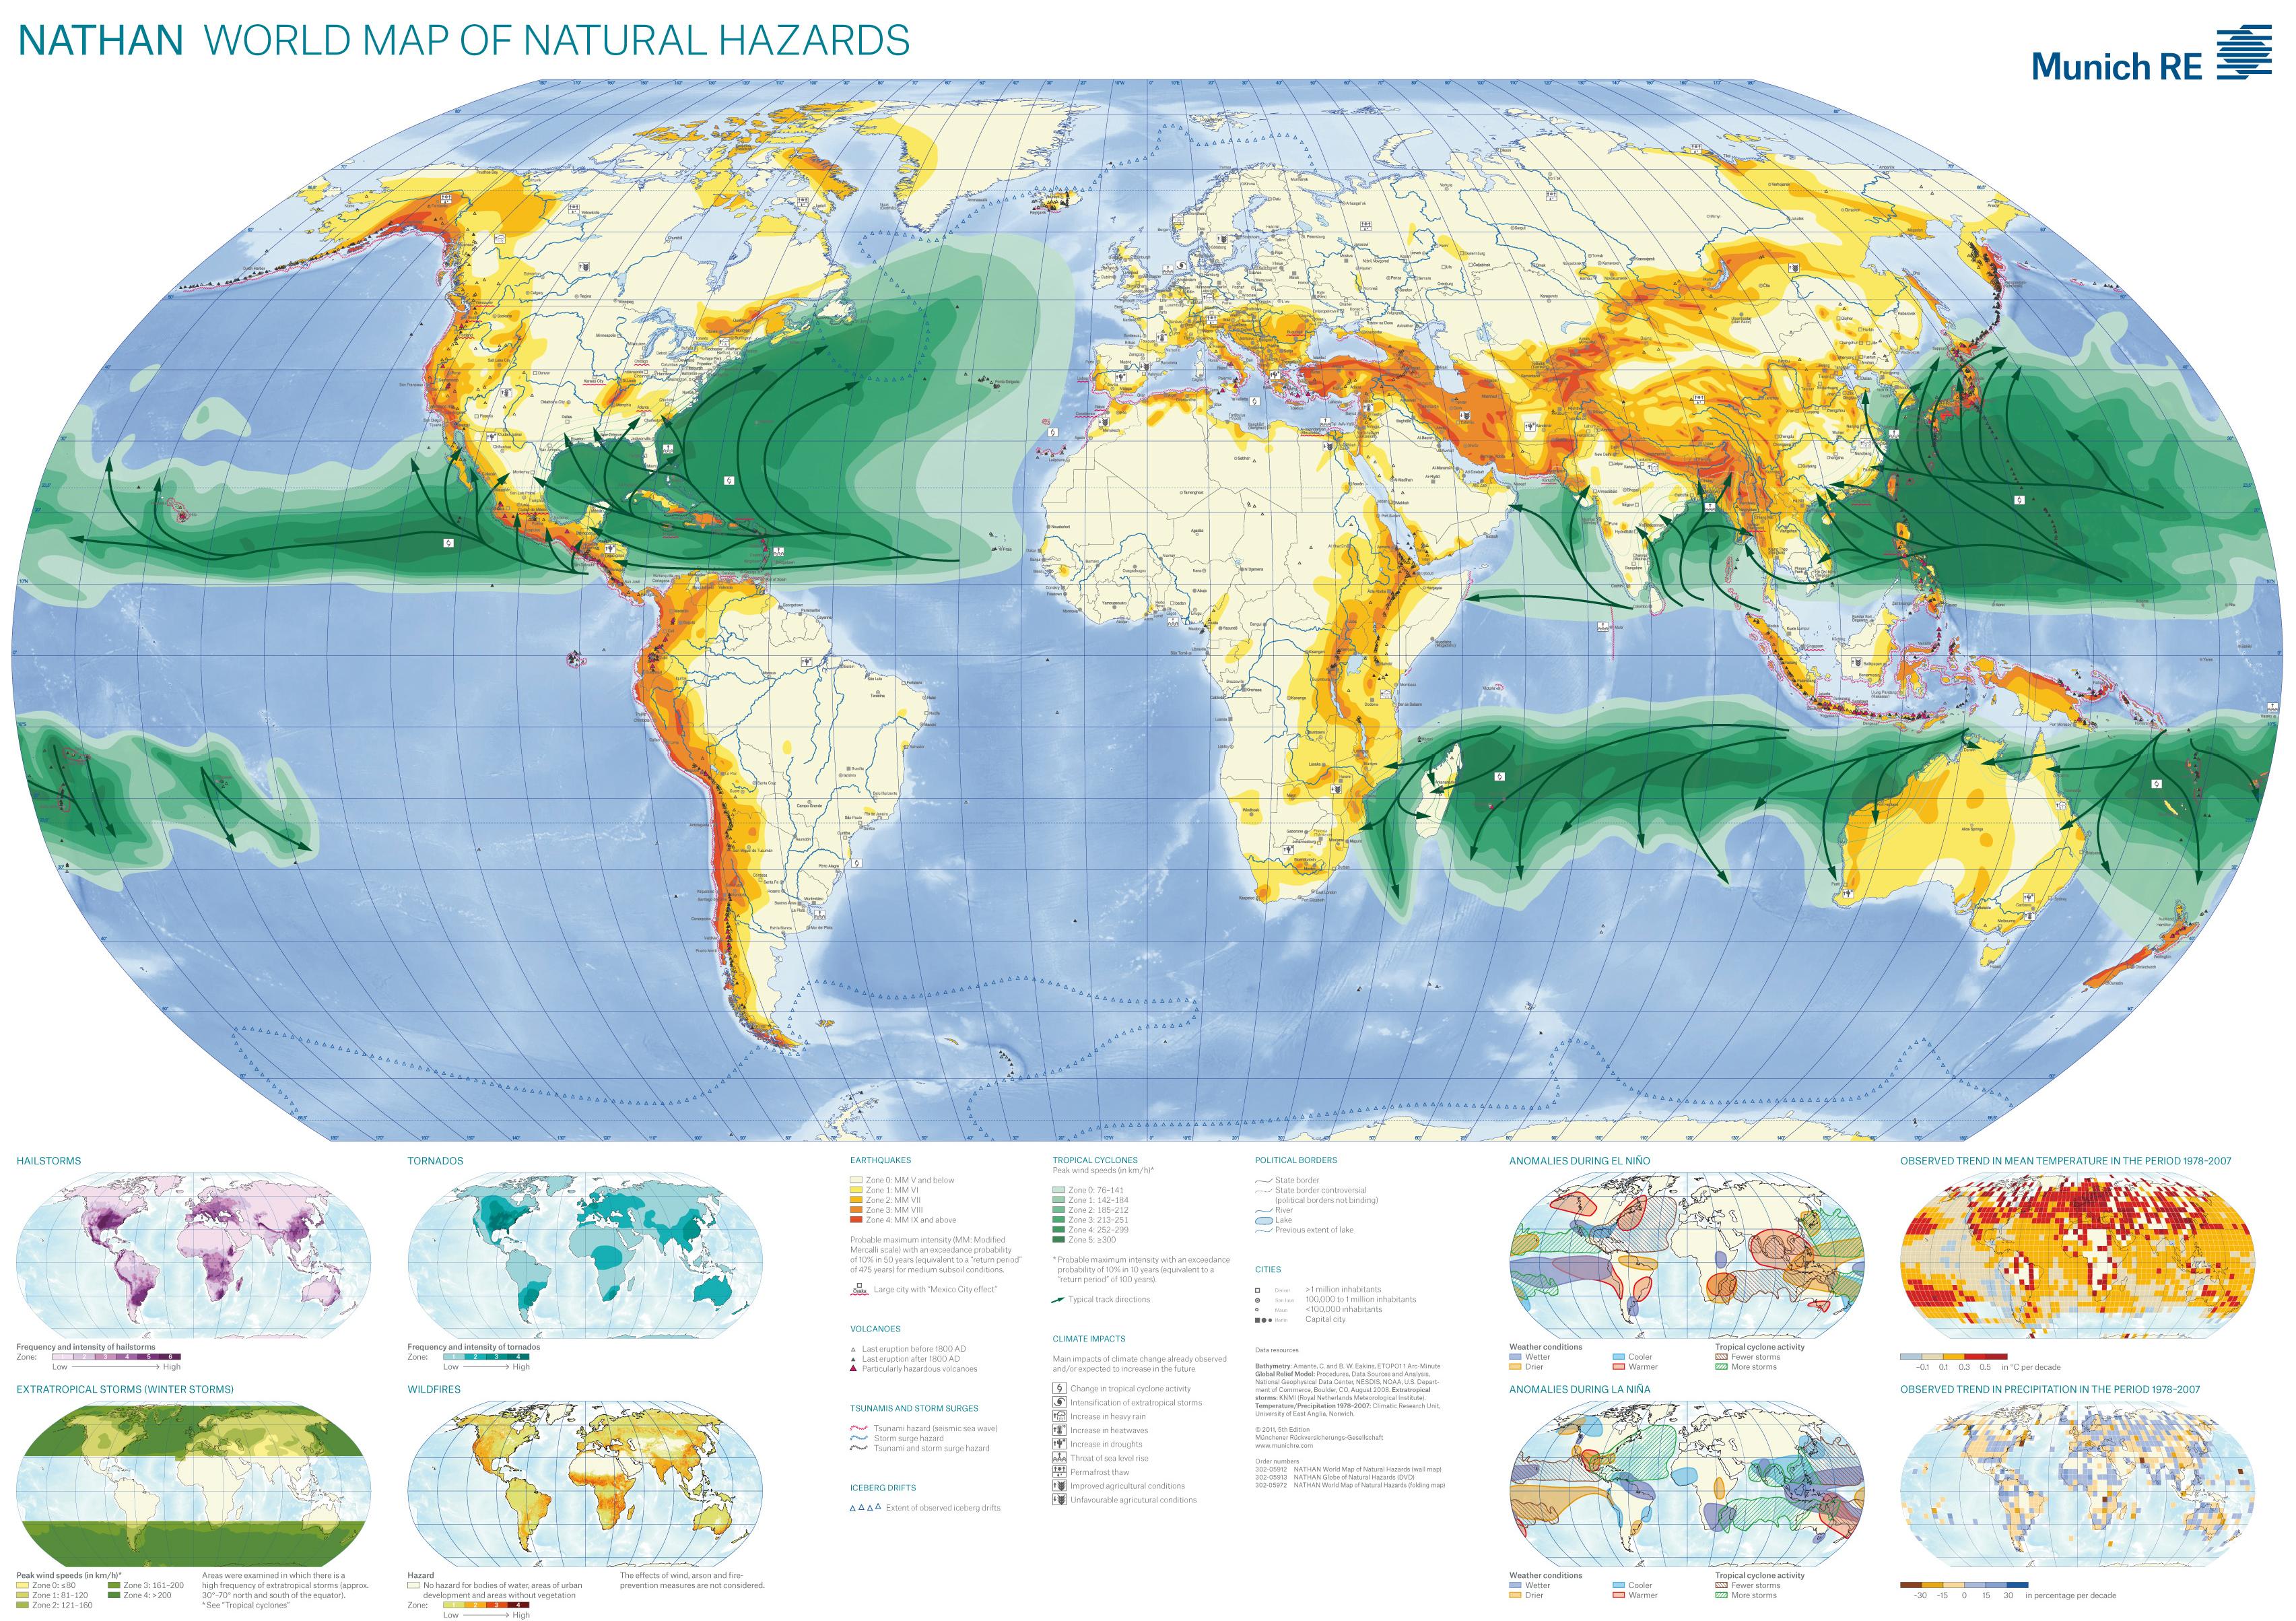 MAP - World Map of Natural Hazards (Munic RE, 2011).jpg